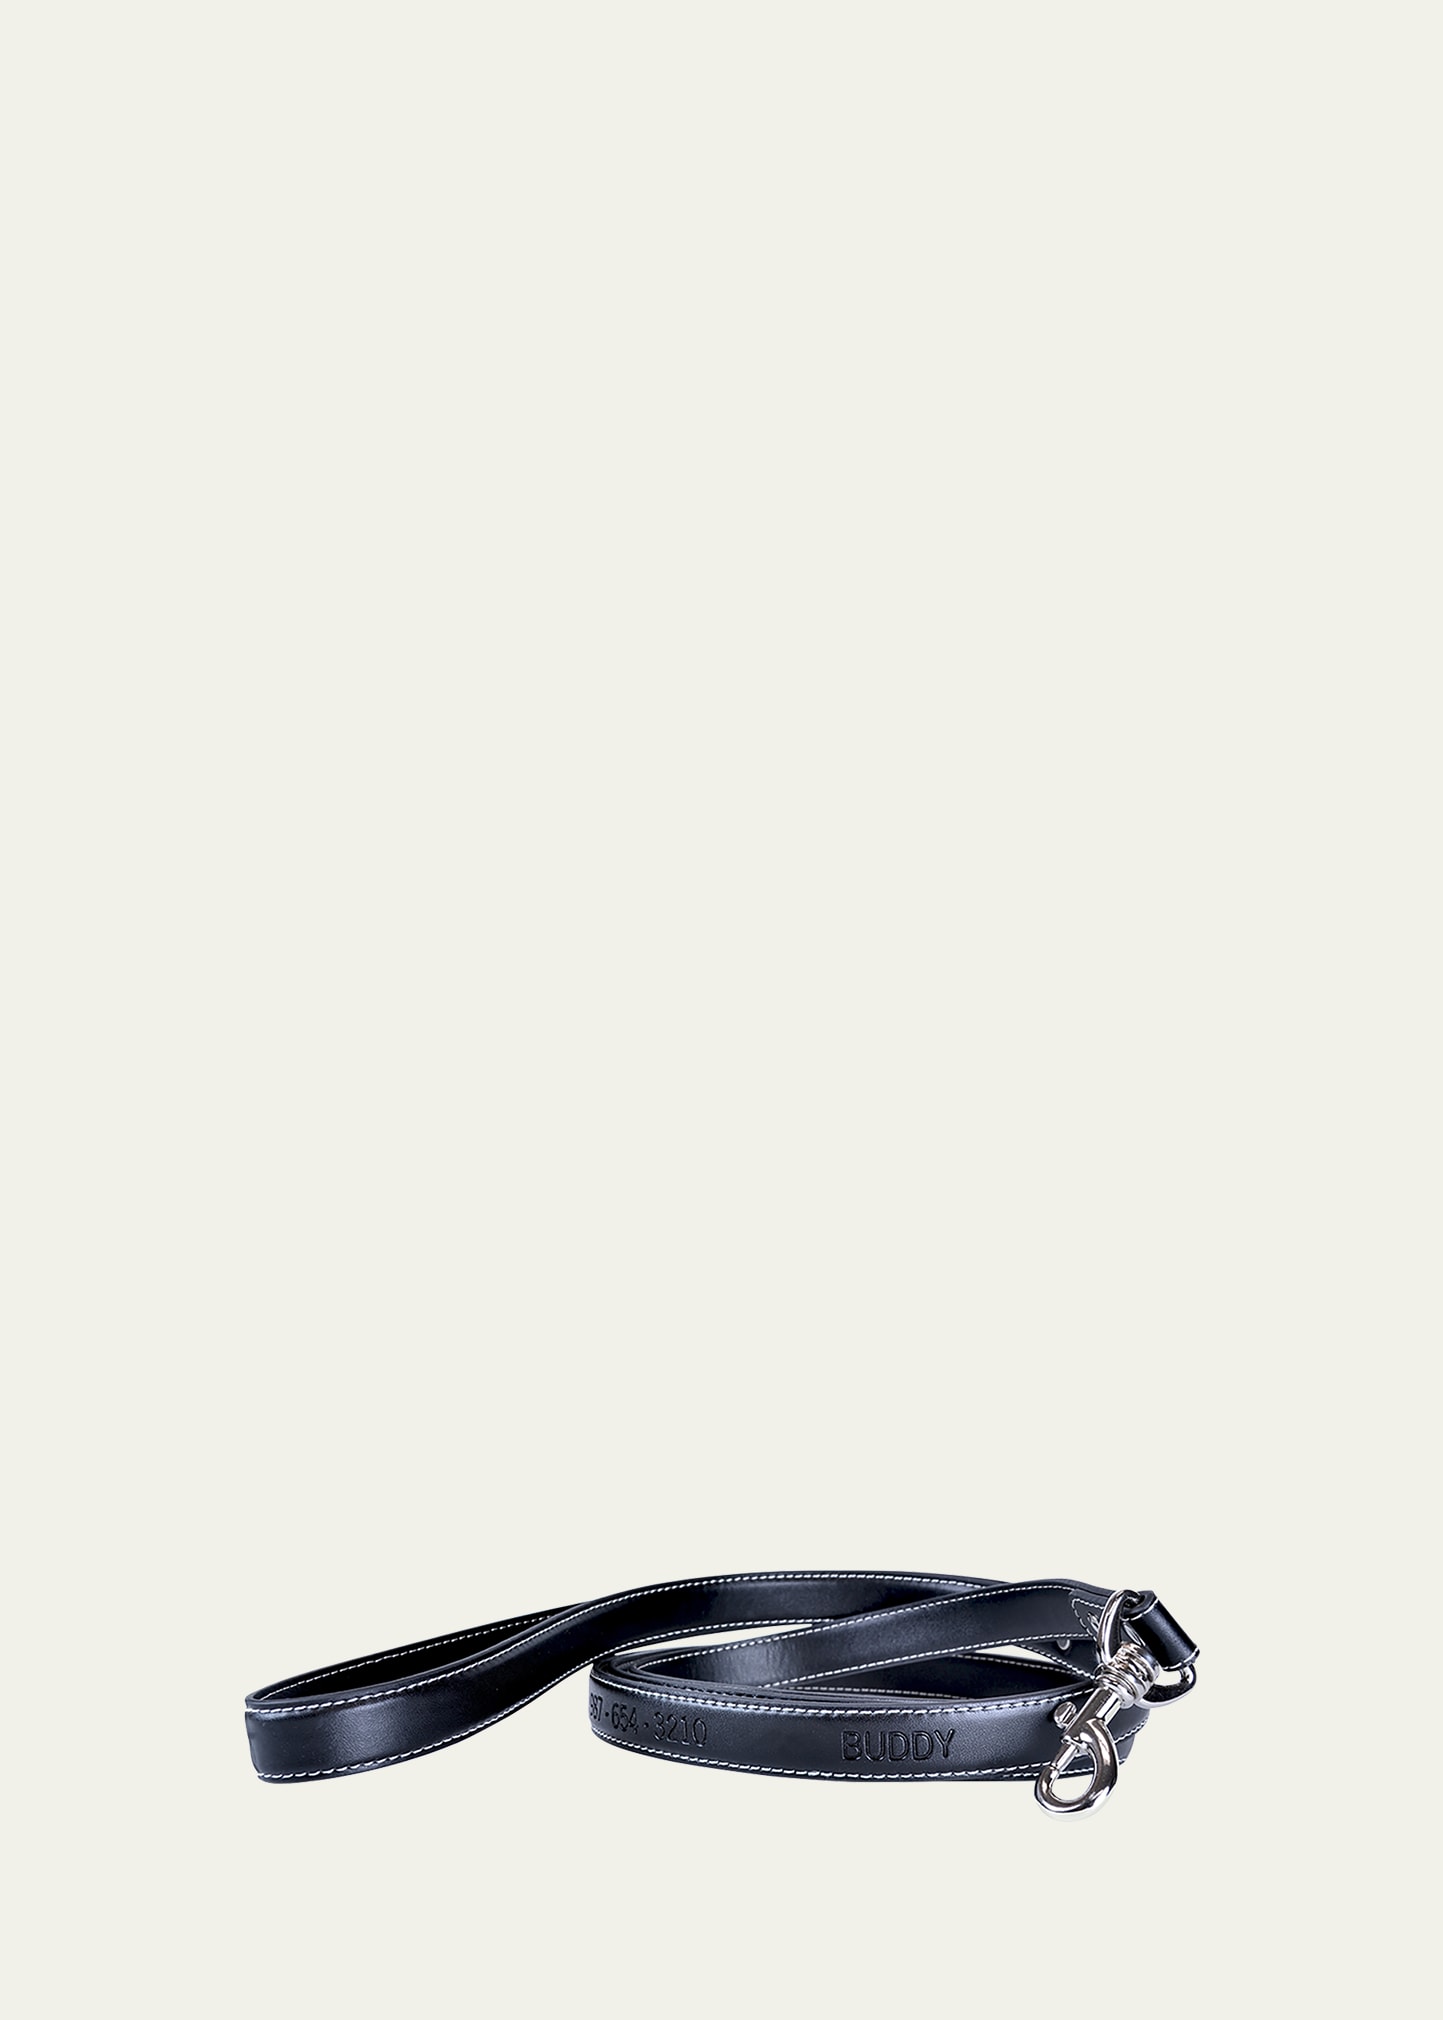 Royce New York Luxe 6' Dog Leash In Black